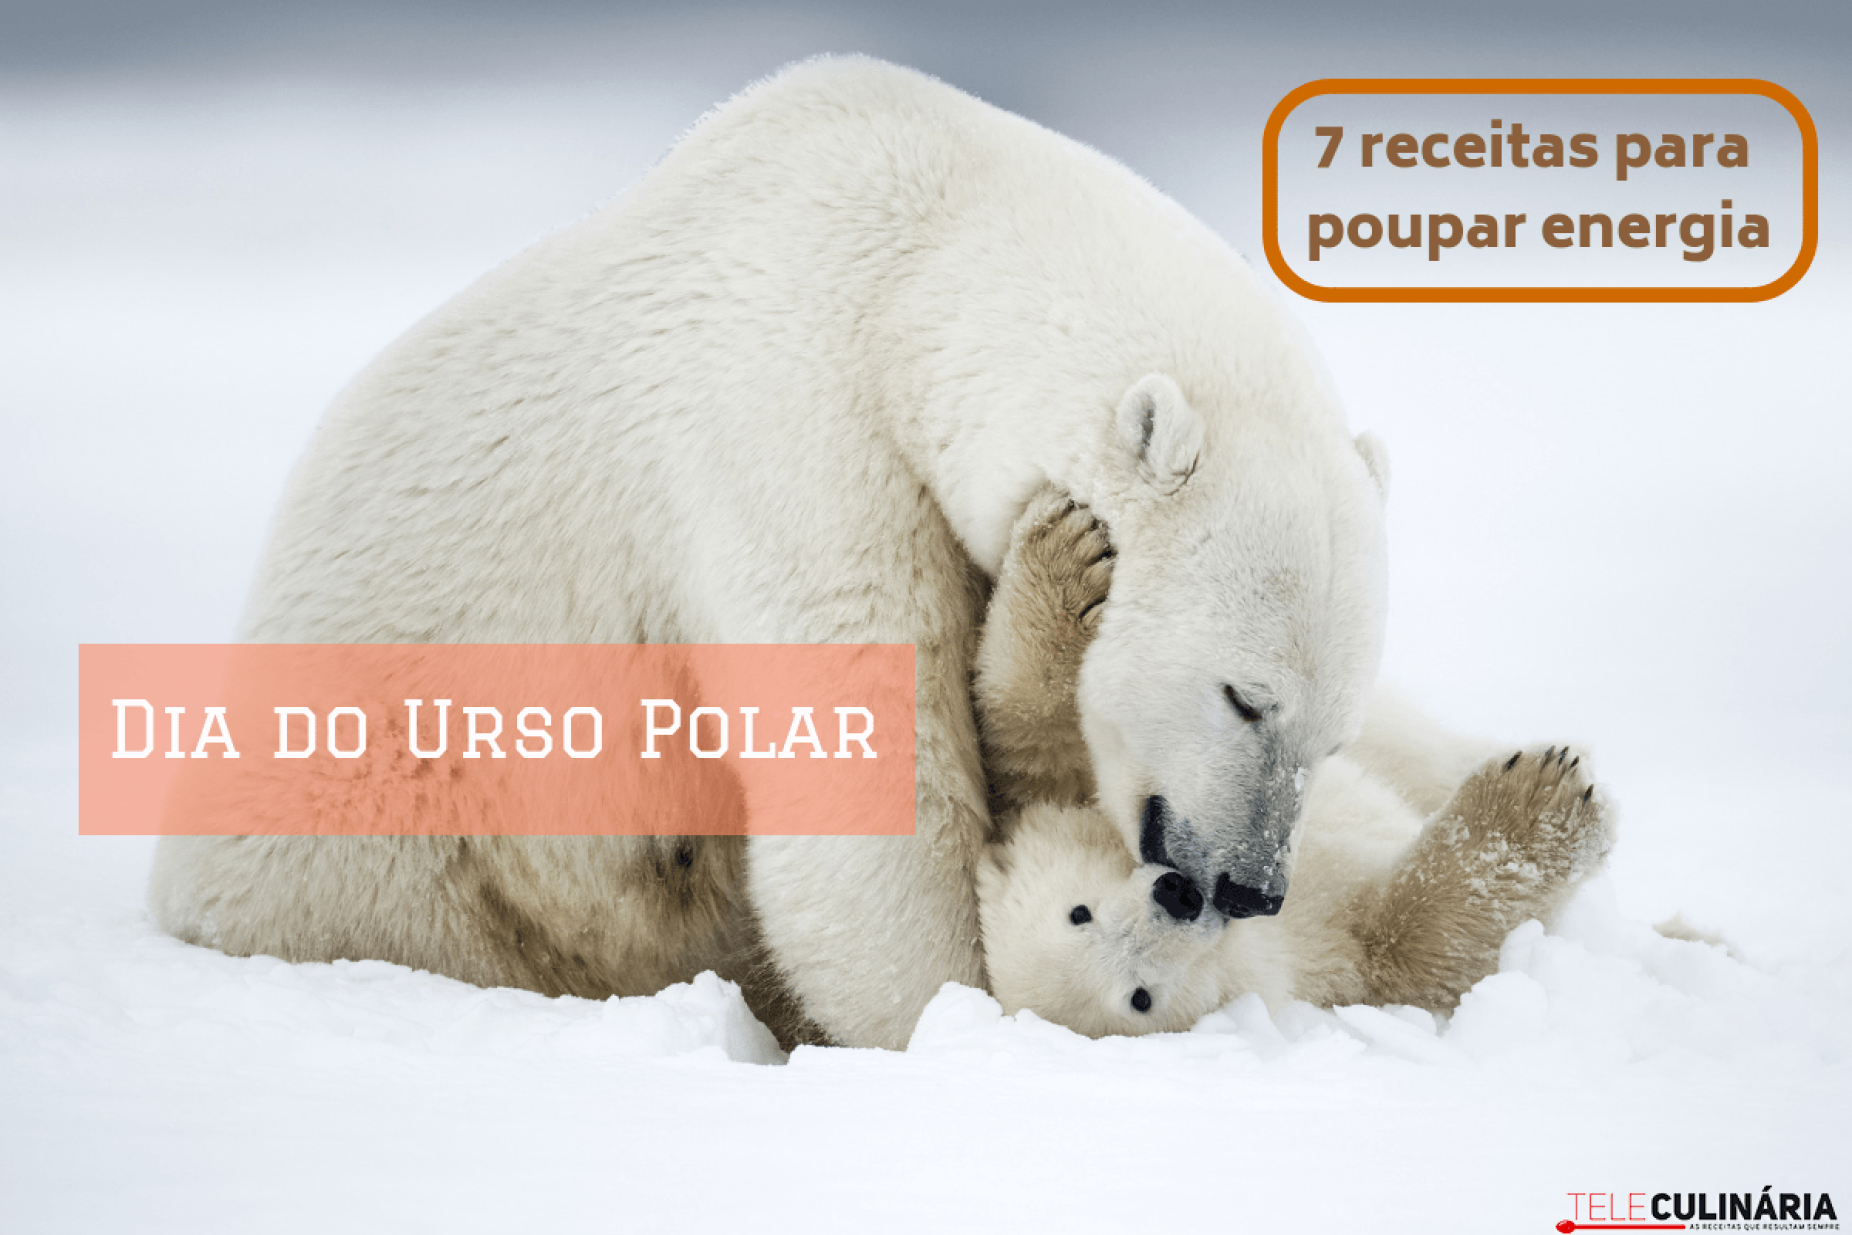 Dia Internacional do Urso Polar - 7 receitas para poupar energia